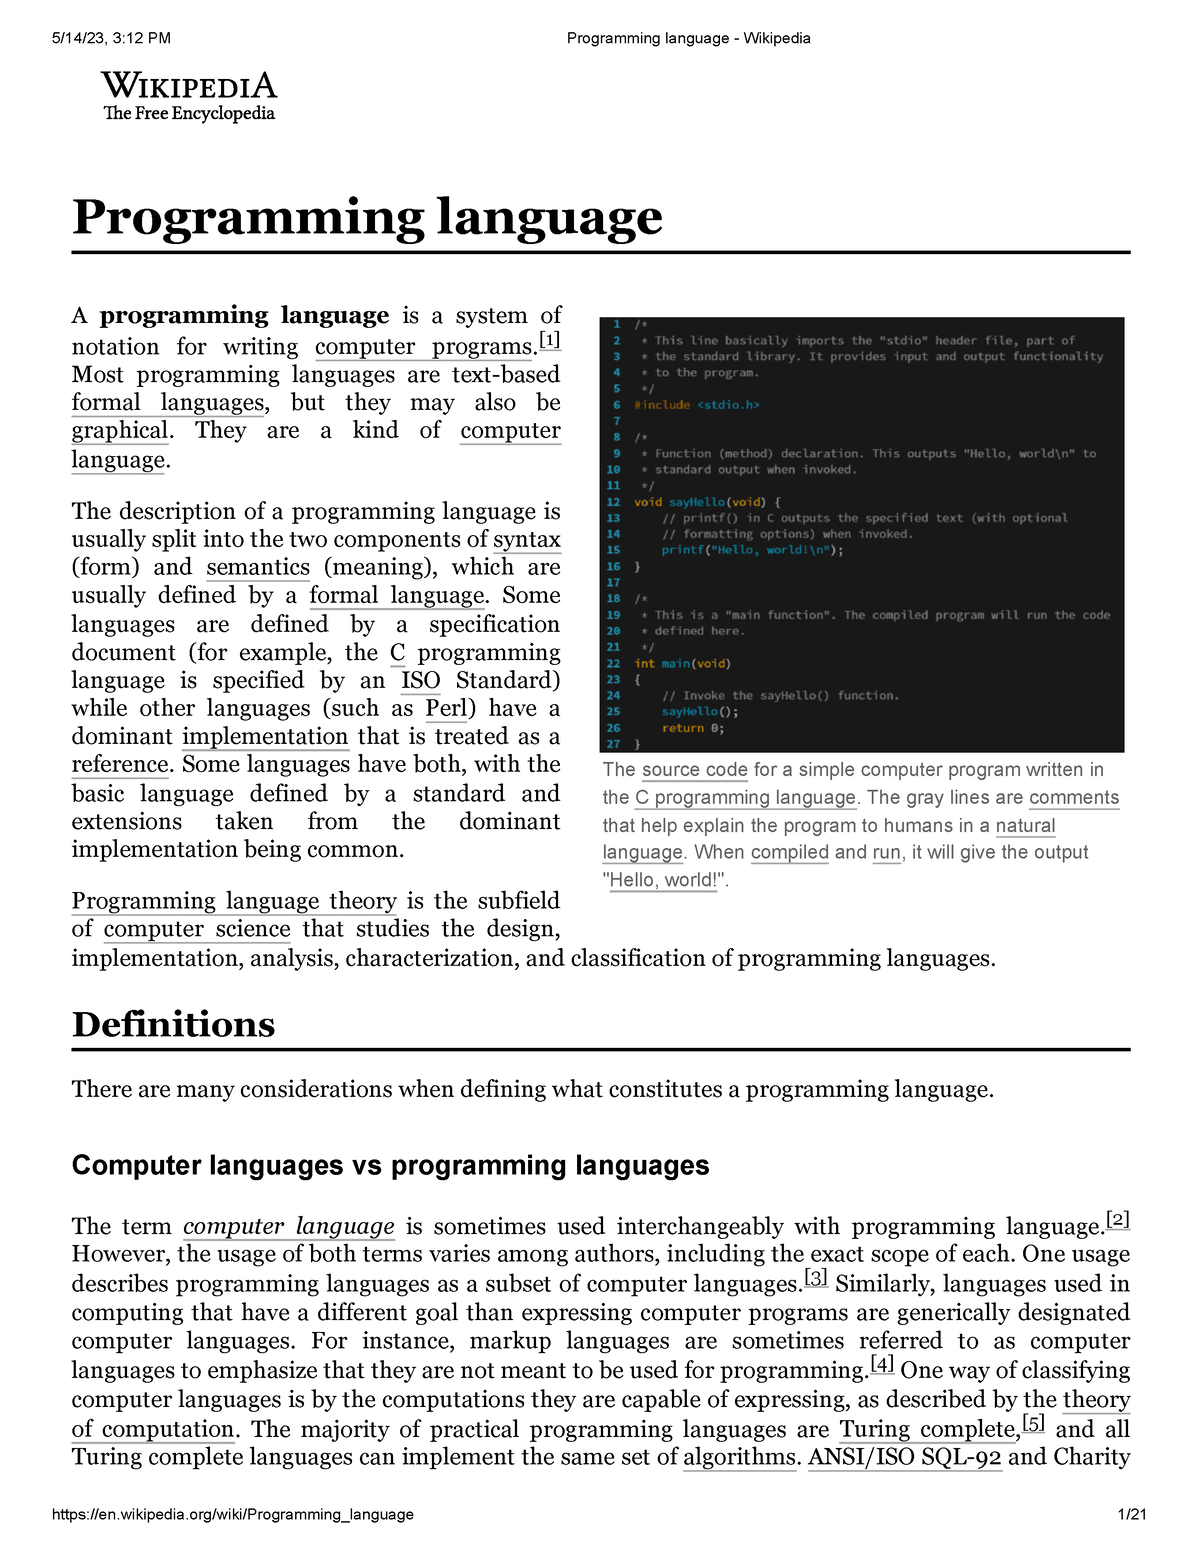 Programming language - Wikipedia